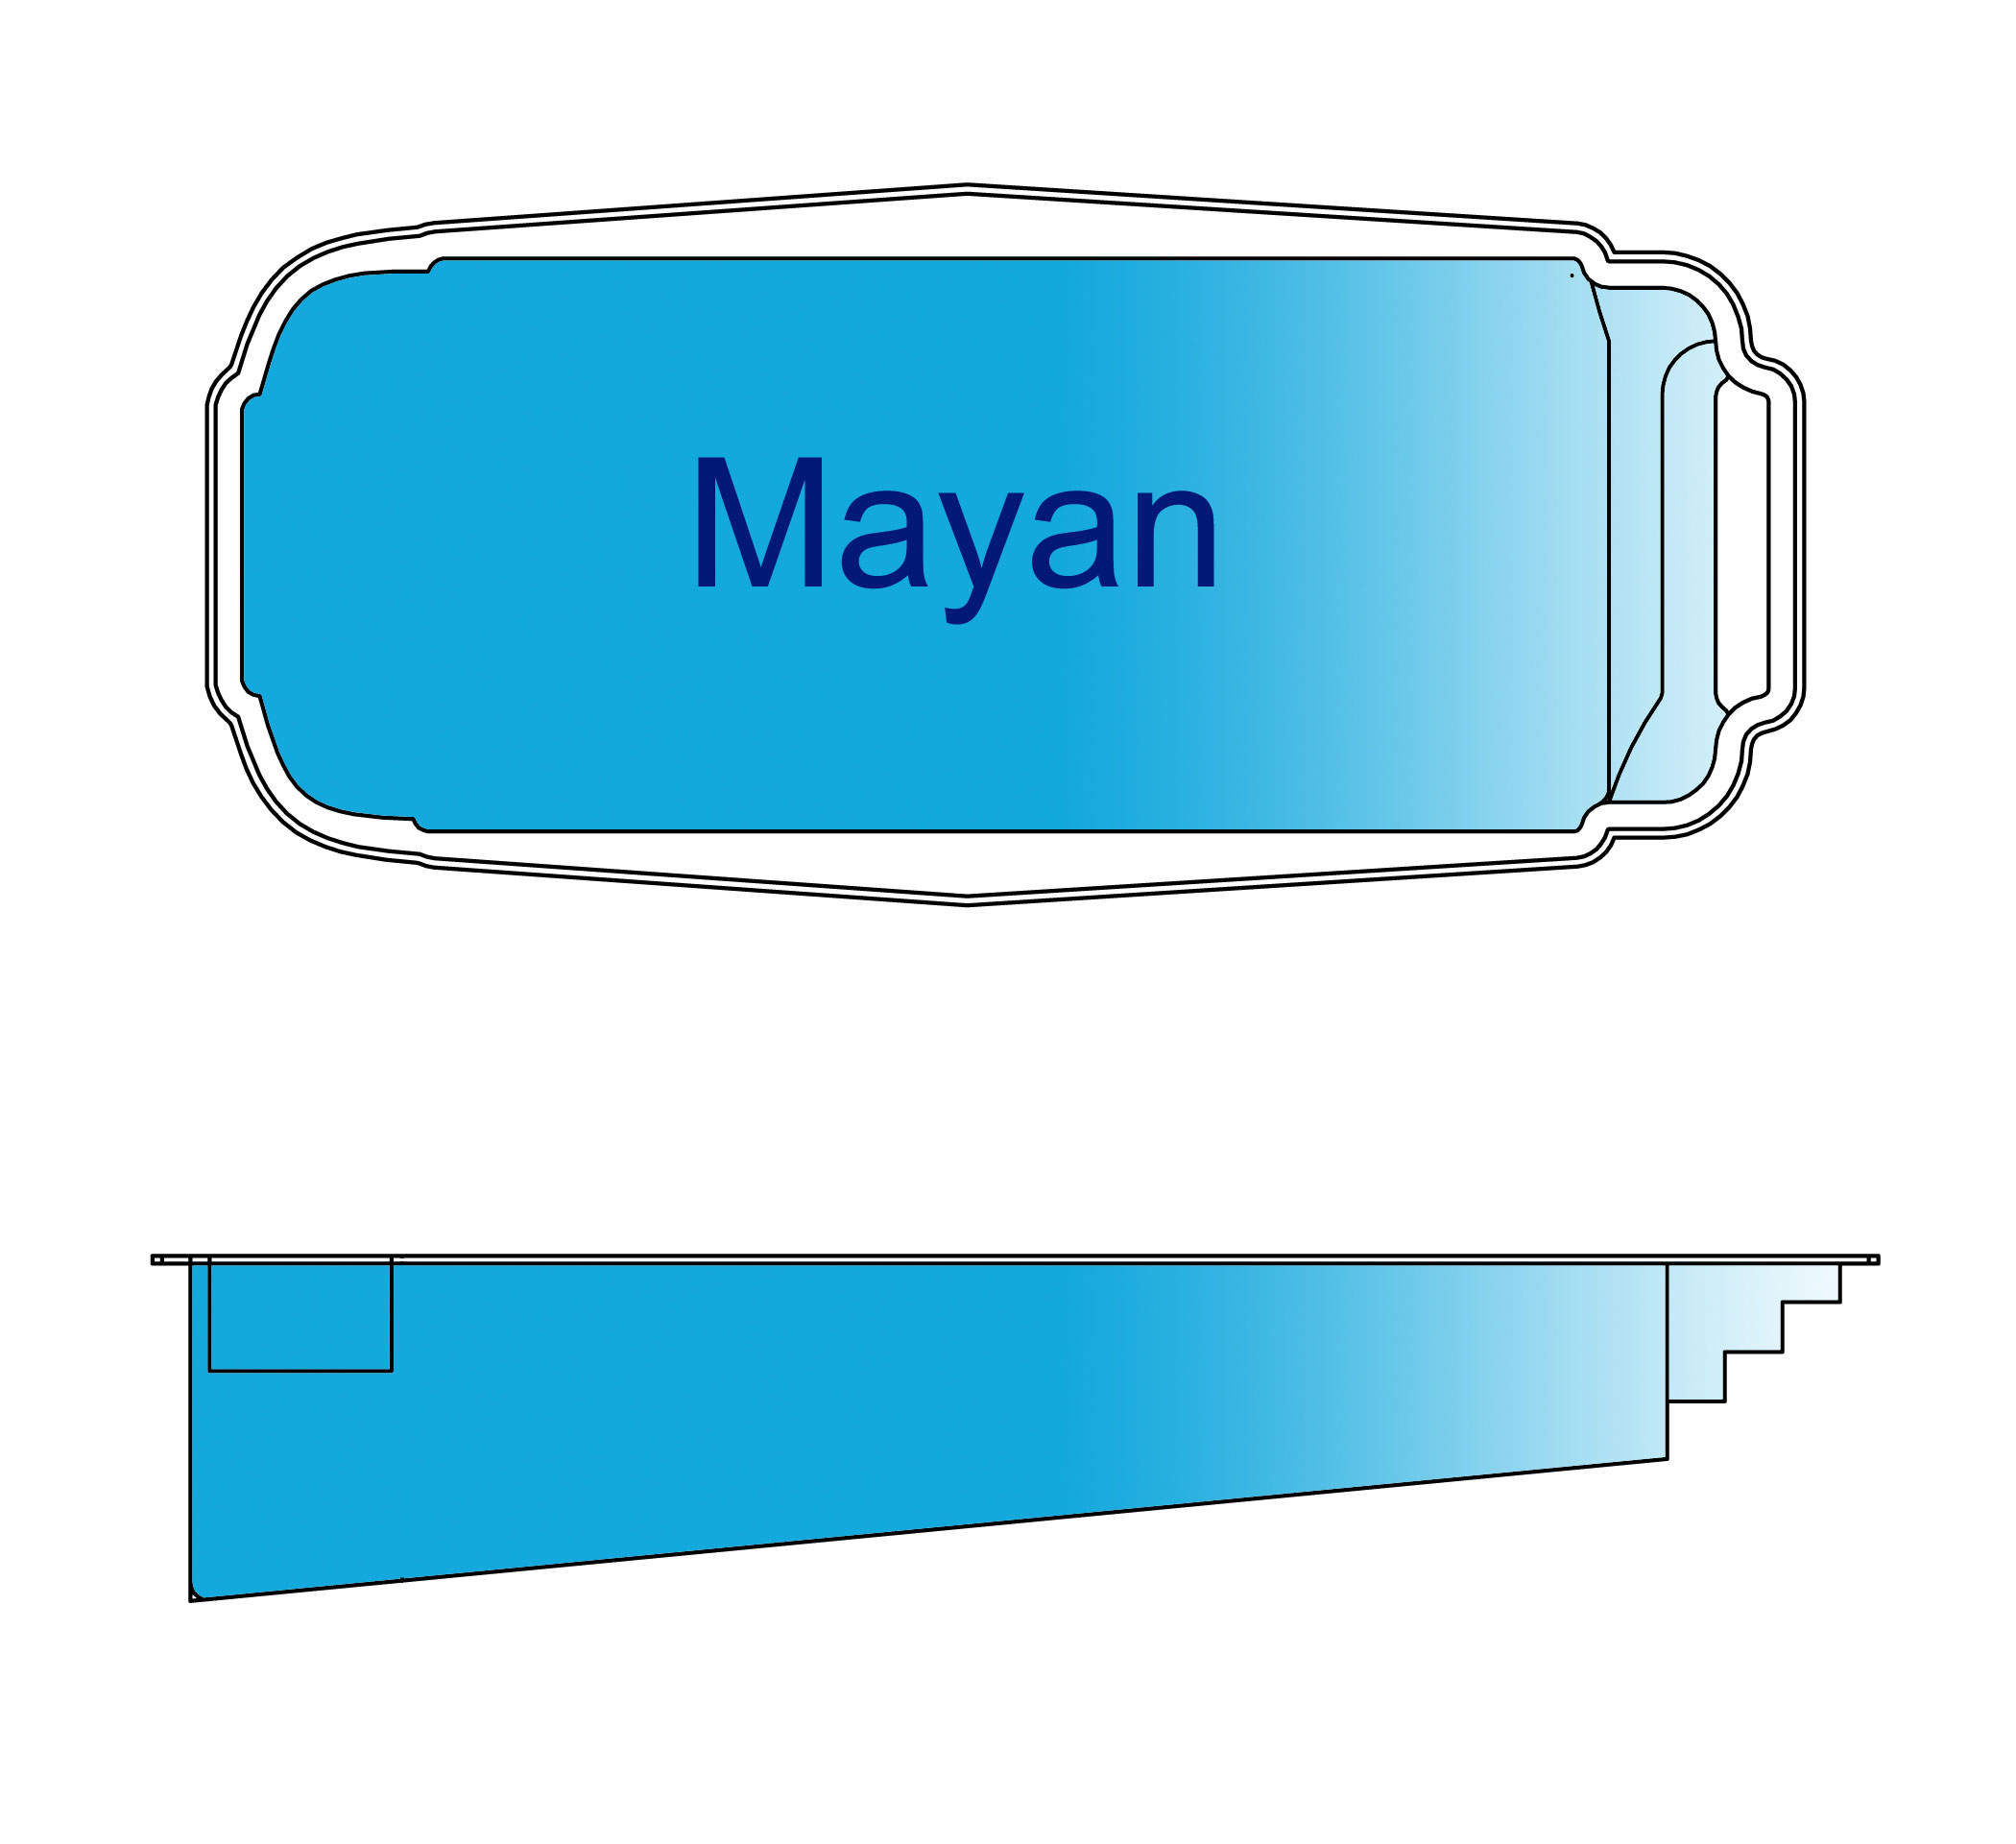 "Mayan" Pool Design